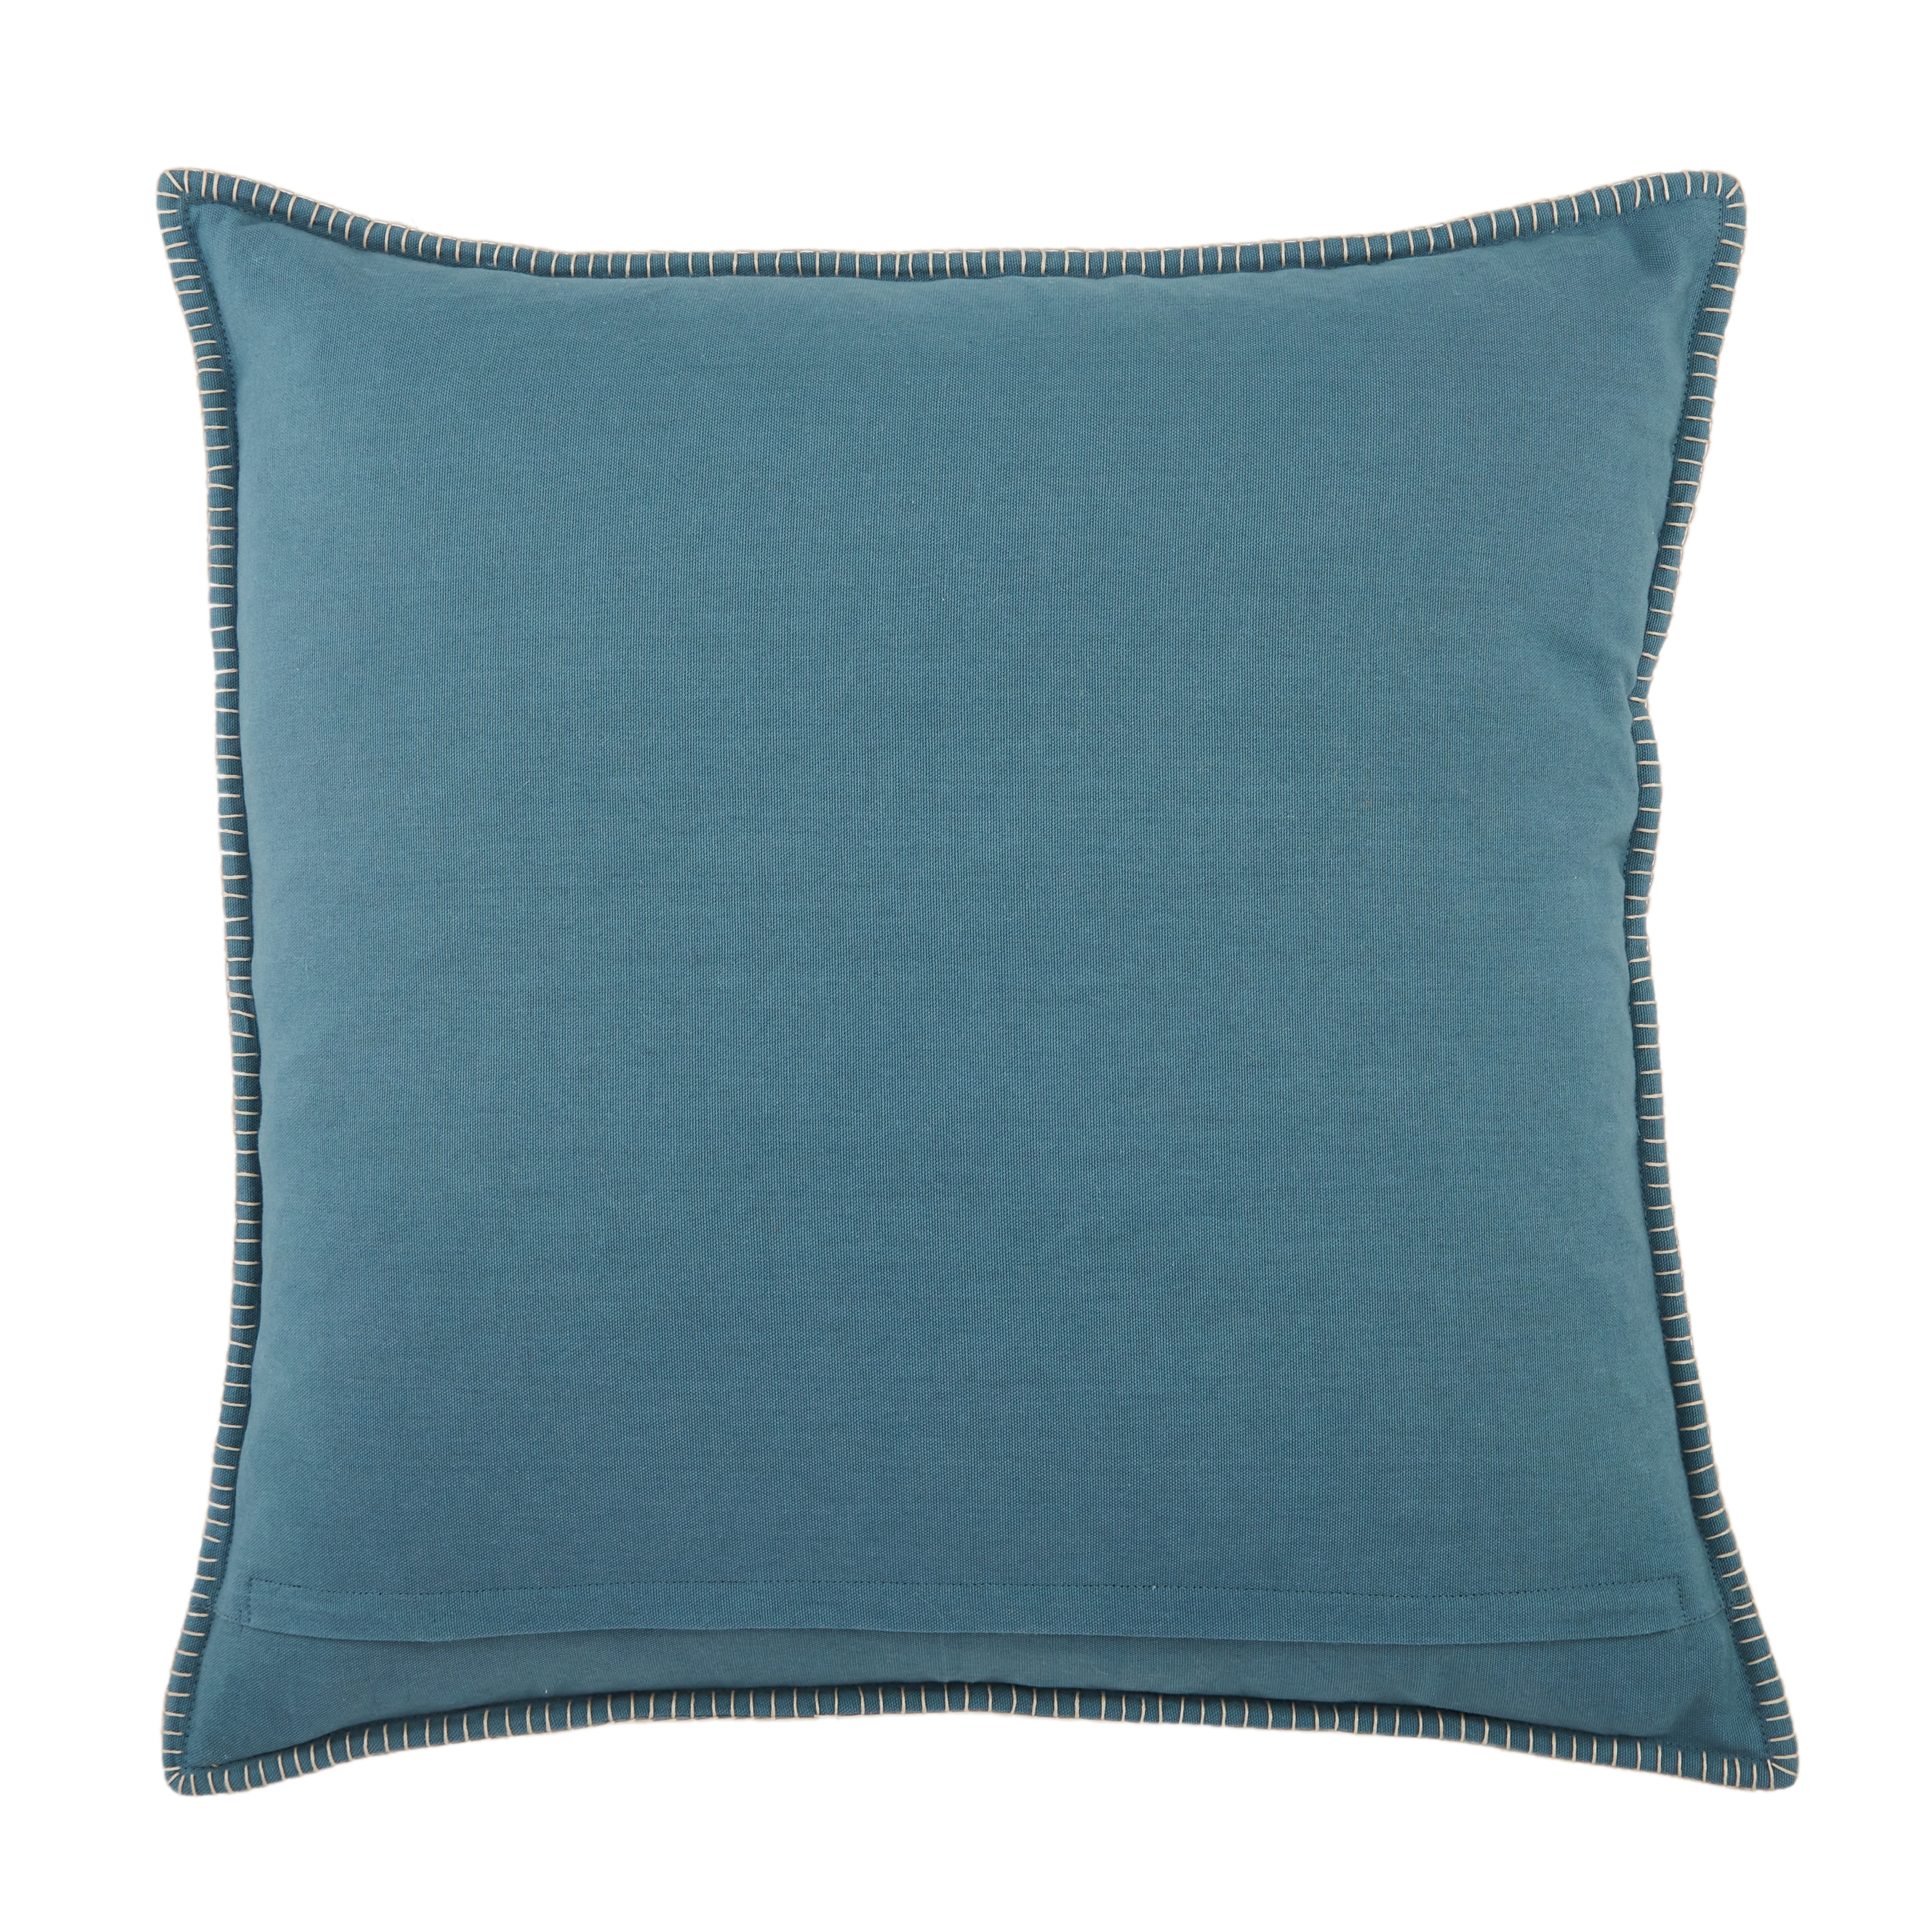 Design (US) Blue 22"X22" Pillow - Image 1